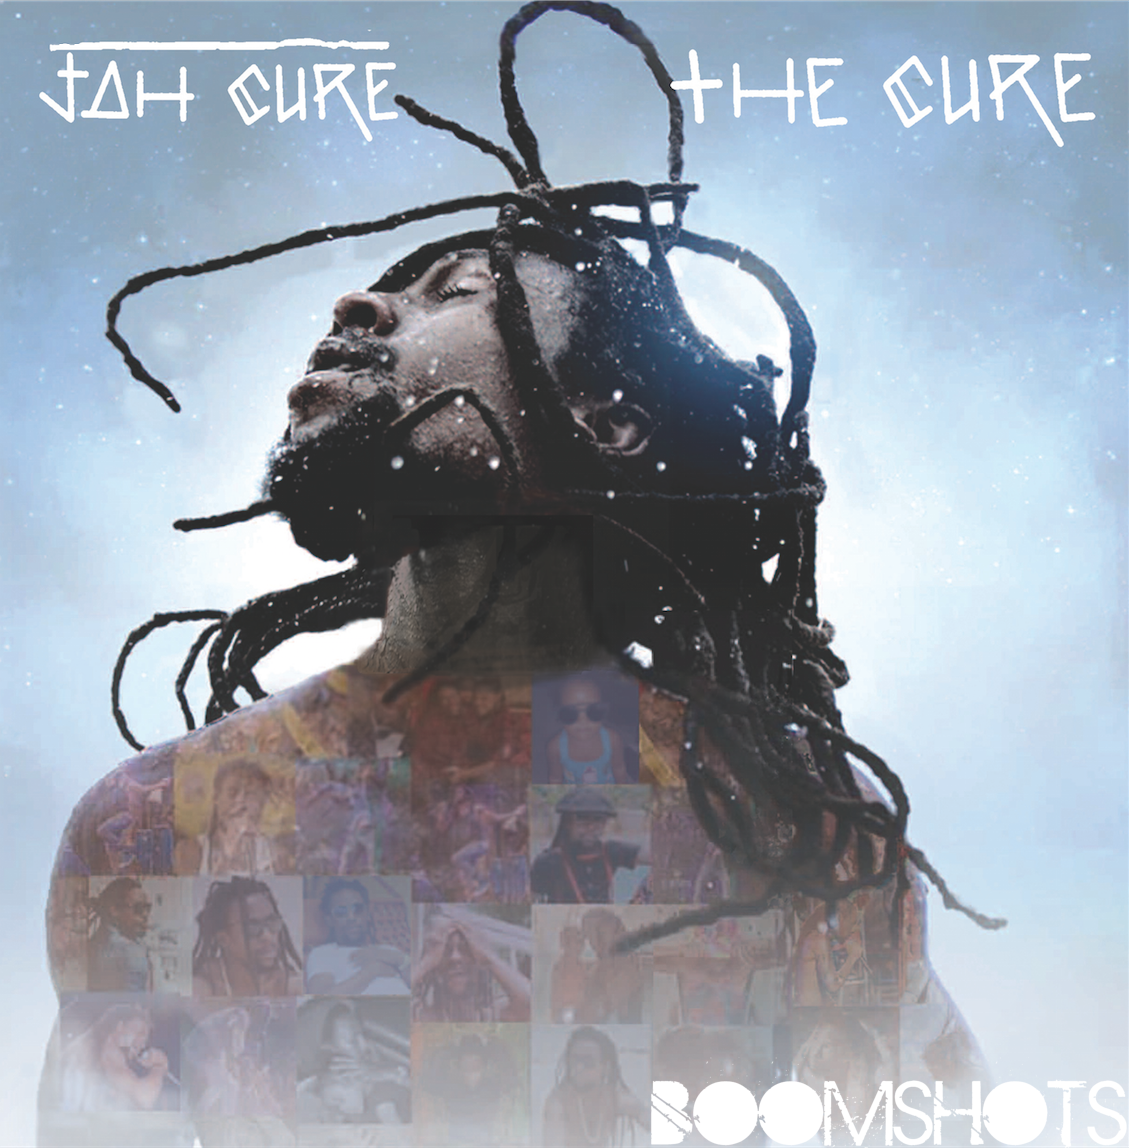 Jah Cure Reveals The Cure Album Cover Art • Boomshots